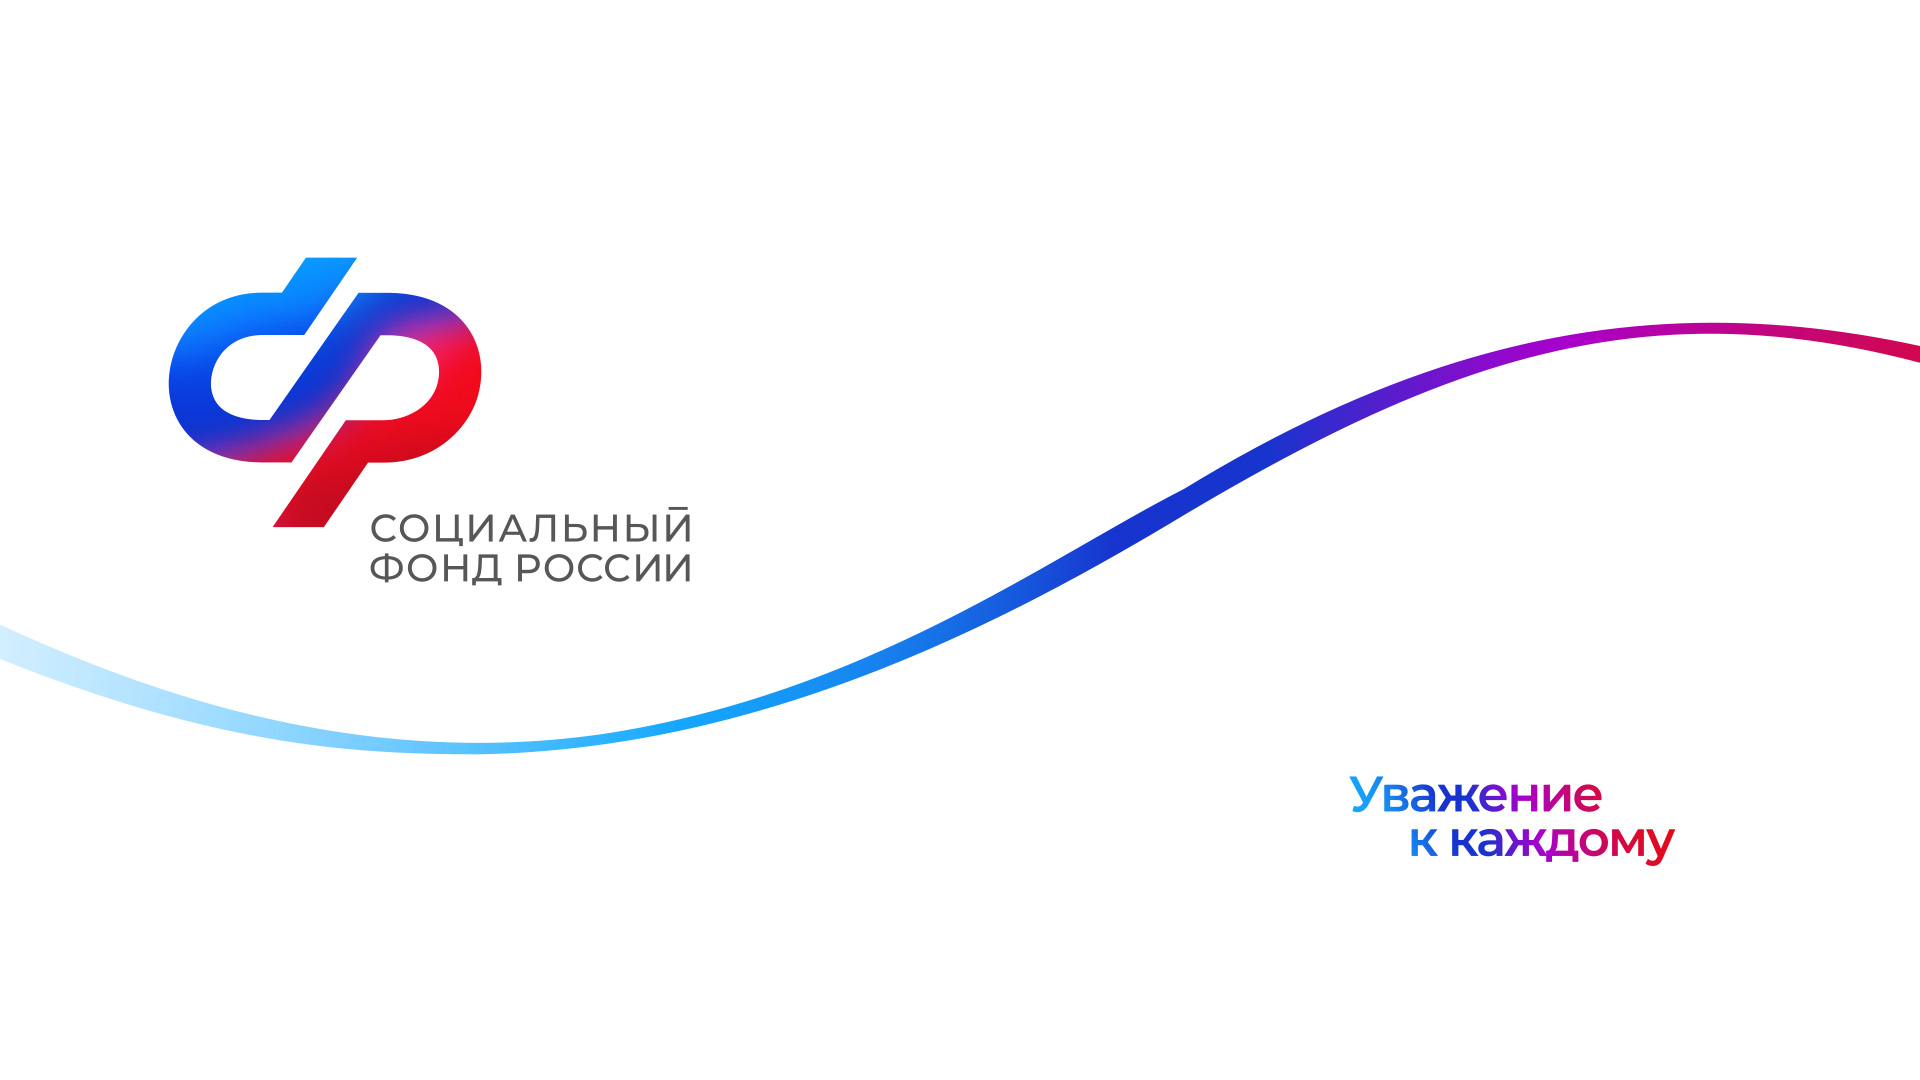 You are currently viewing Официальные аккаунты Социального фонда России